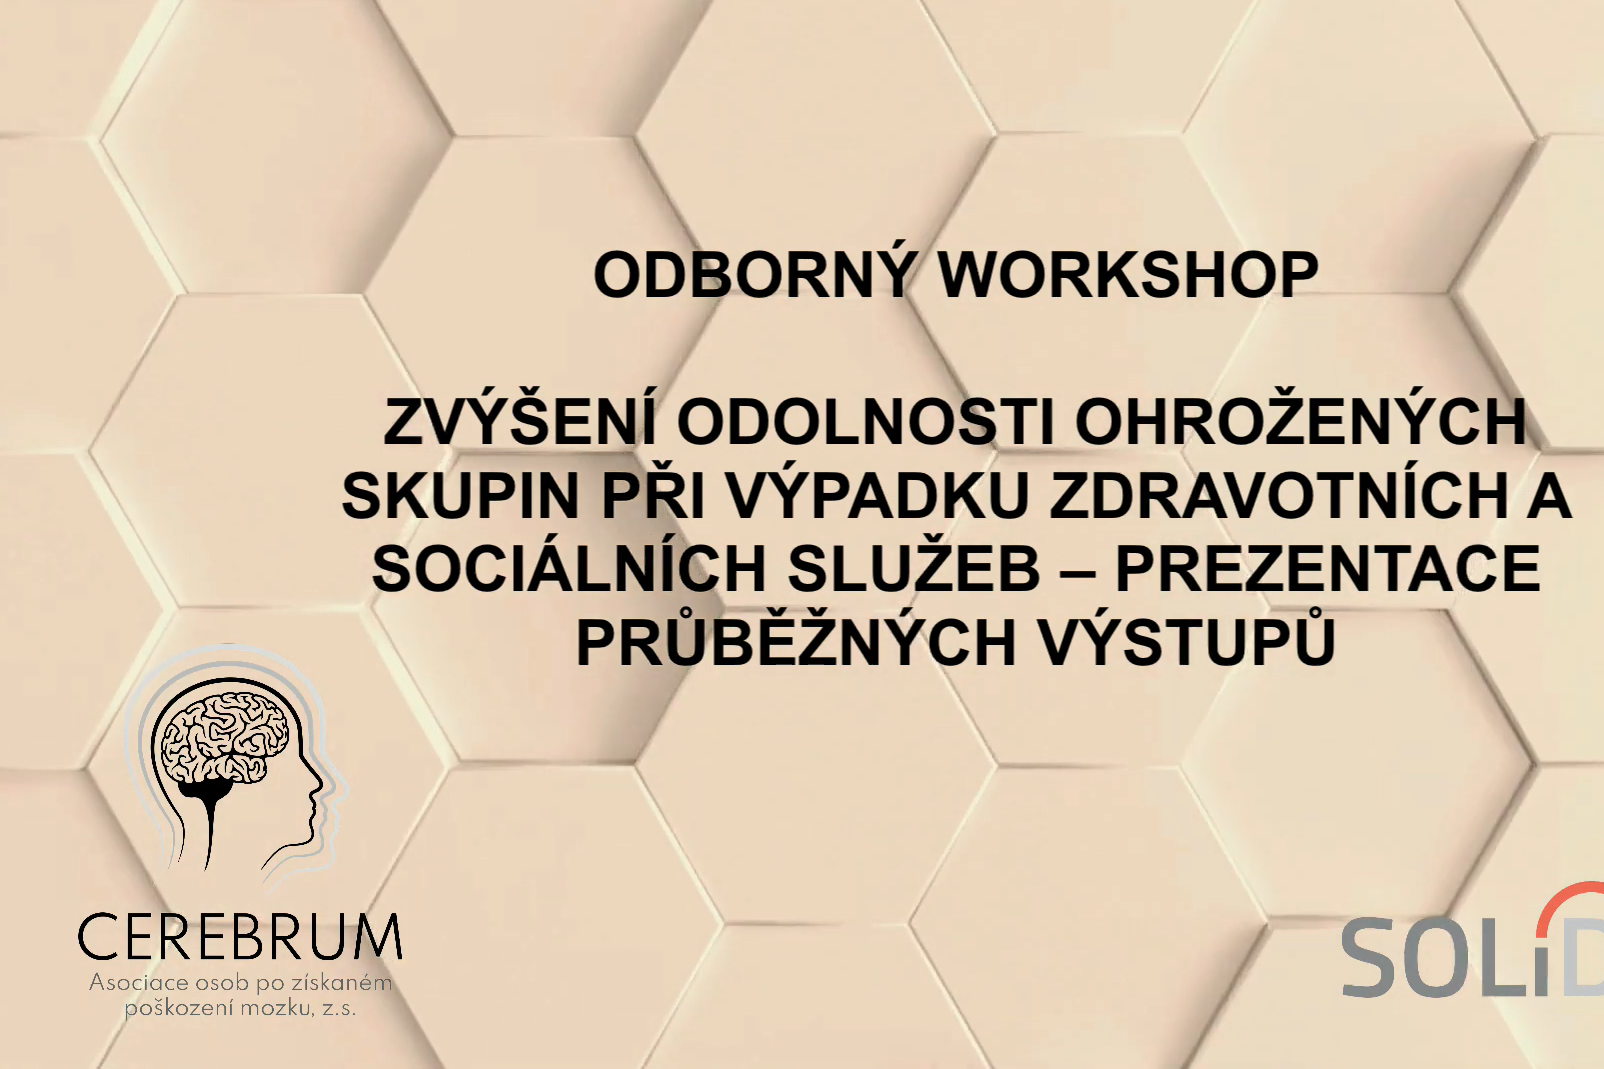 Odborný workshop 24. 2. 2022